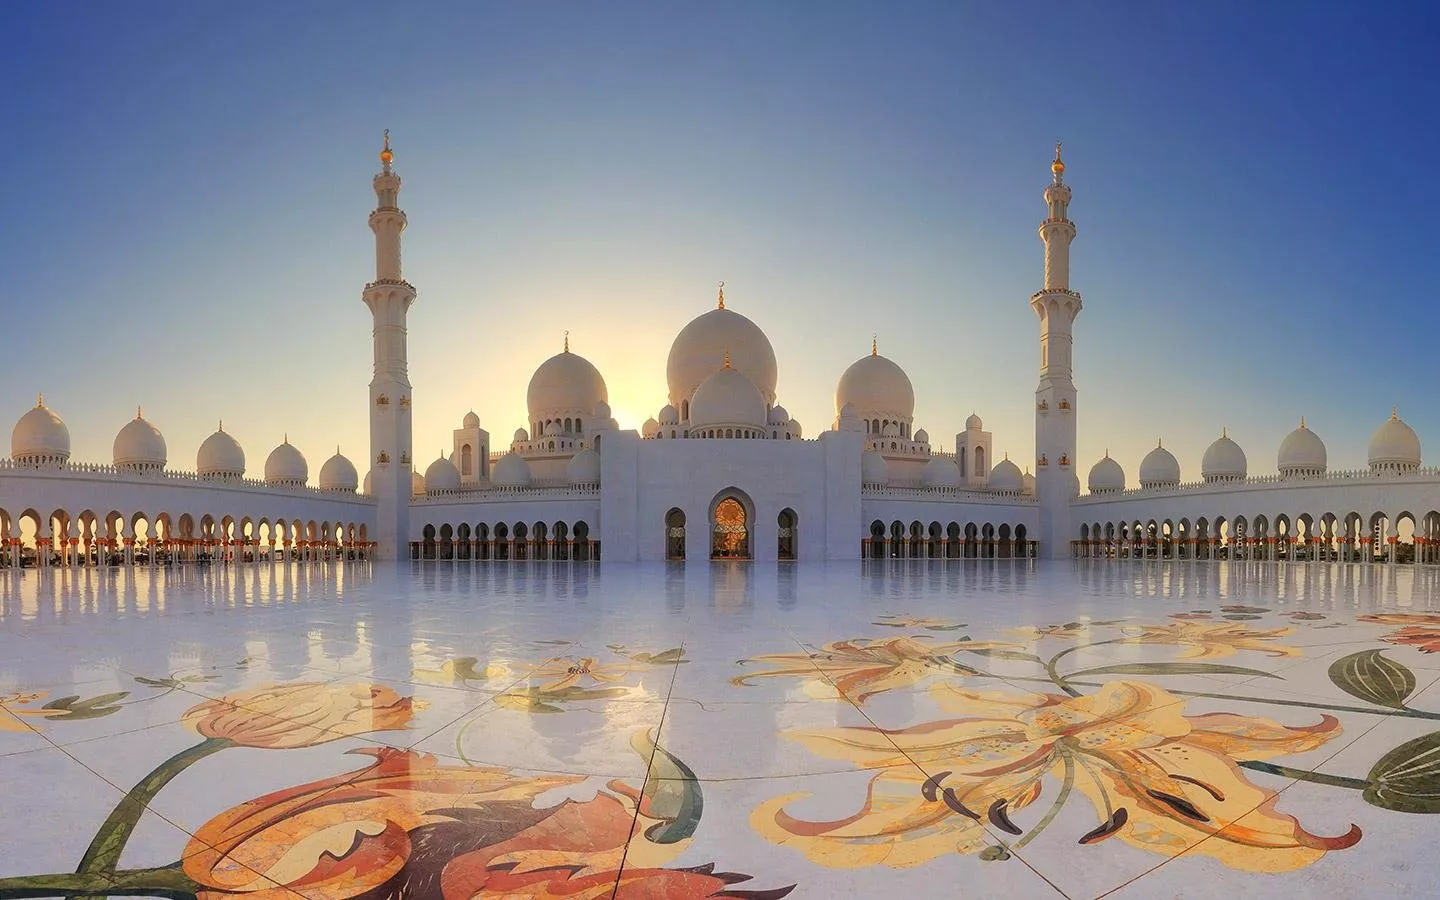 أفضل أماكن سياحية لقضاء عطلة نهاية الأسبوع في أبو ظبي